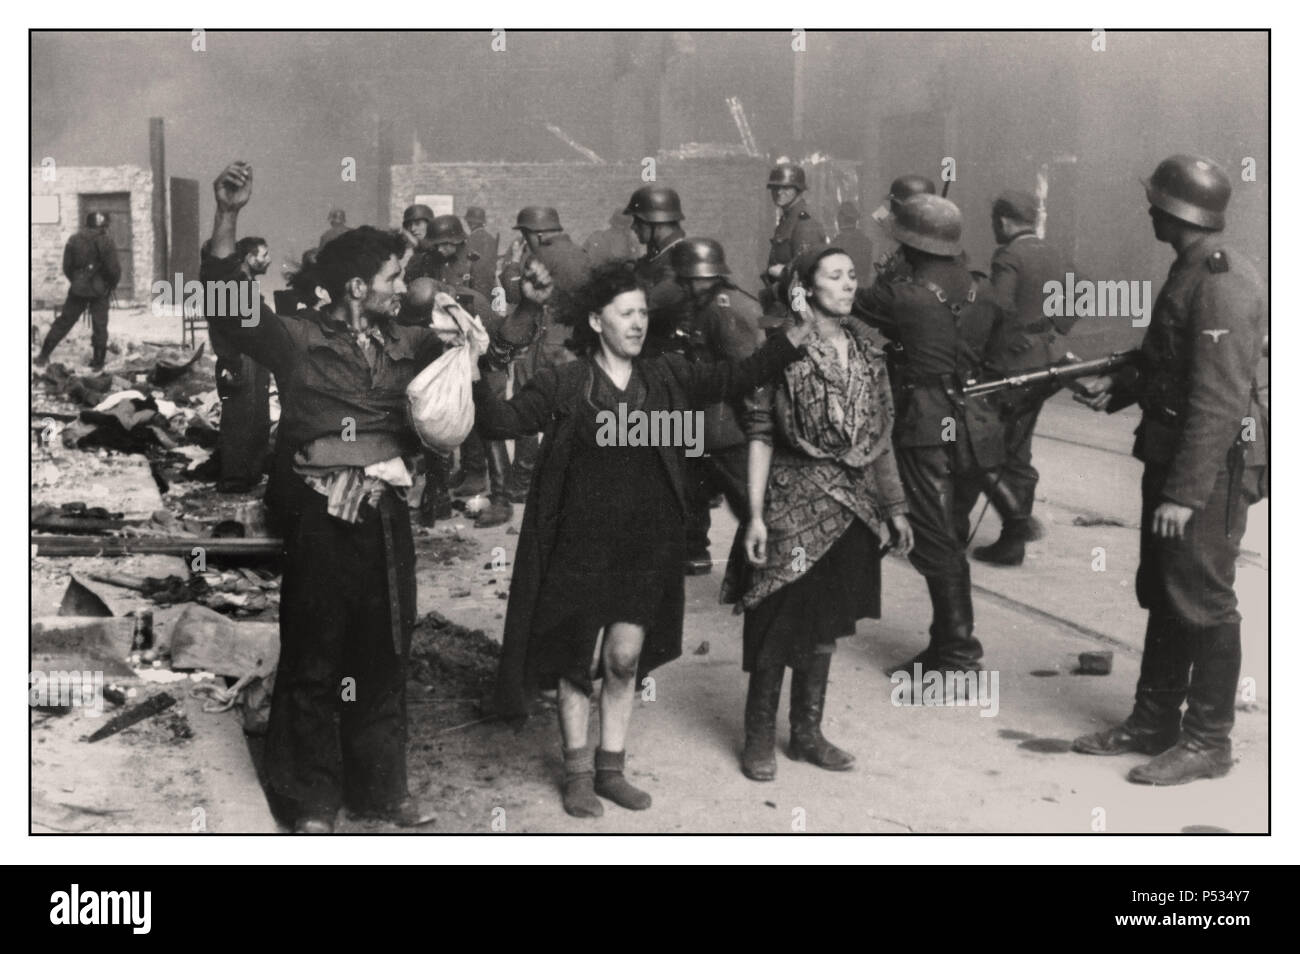 GHETTO DE VARSOVIE 1943 brave les juifs polonais sont dans une calme défiance tandis que la liquidation brutale du ghetto de Varsovie par les troupes nazies Waffen SS et Wehrmacht a lieu autour d'eux 1943 mai 'le quartier juif de Varsovie n'est plus!' ..a écrit Jürgen Stroop dans le RAPPORT STROOP fait pour Heinrich Himmler sur la liquidation brutale et inhumaine du ghetto de Varsovie en mai 1943, il s'agissait d'une atrocité et d'un crime de guerre nazi documenté utilisé comme preuve par le Conseil des Etats-Unis pour juger de la criminalité de l'axe. Nuremberg Allemagne Banque D'Images